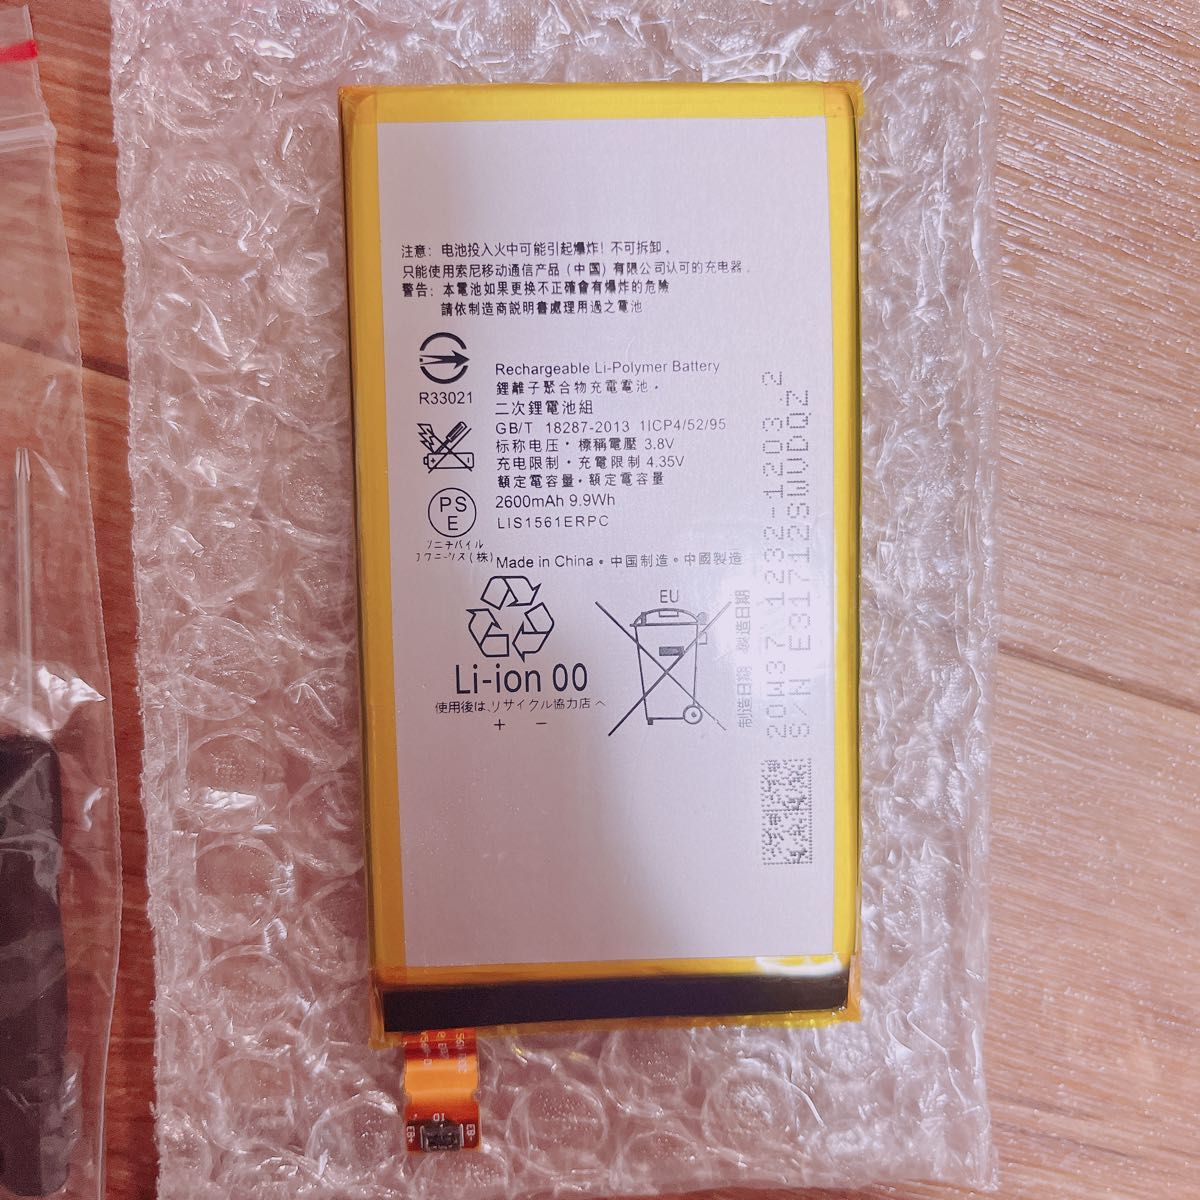  LIS1561ERPC 互換バッテリー 電池パック Xperia Z3 